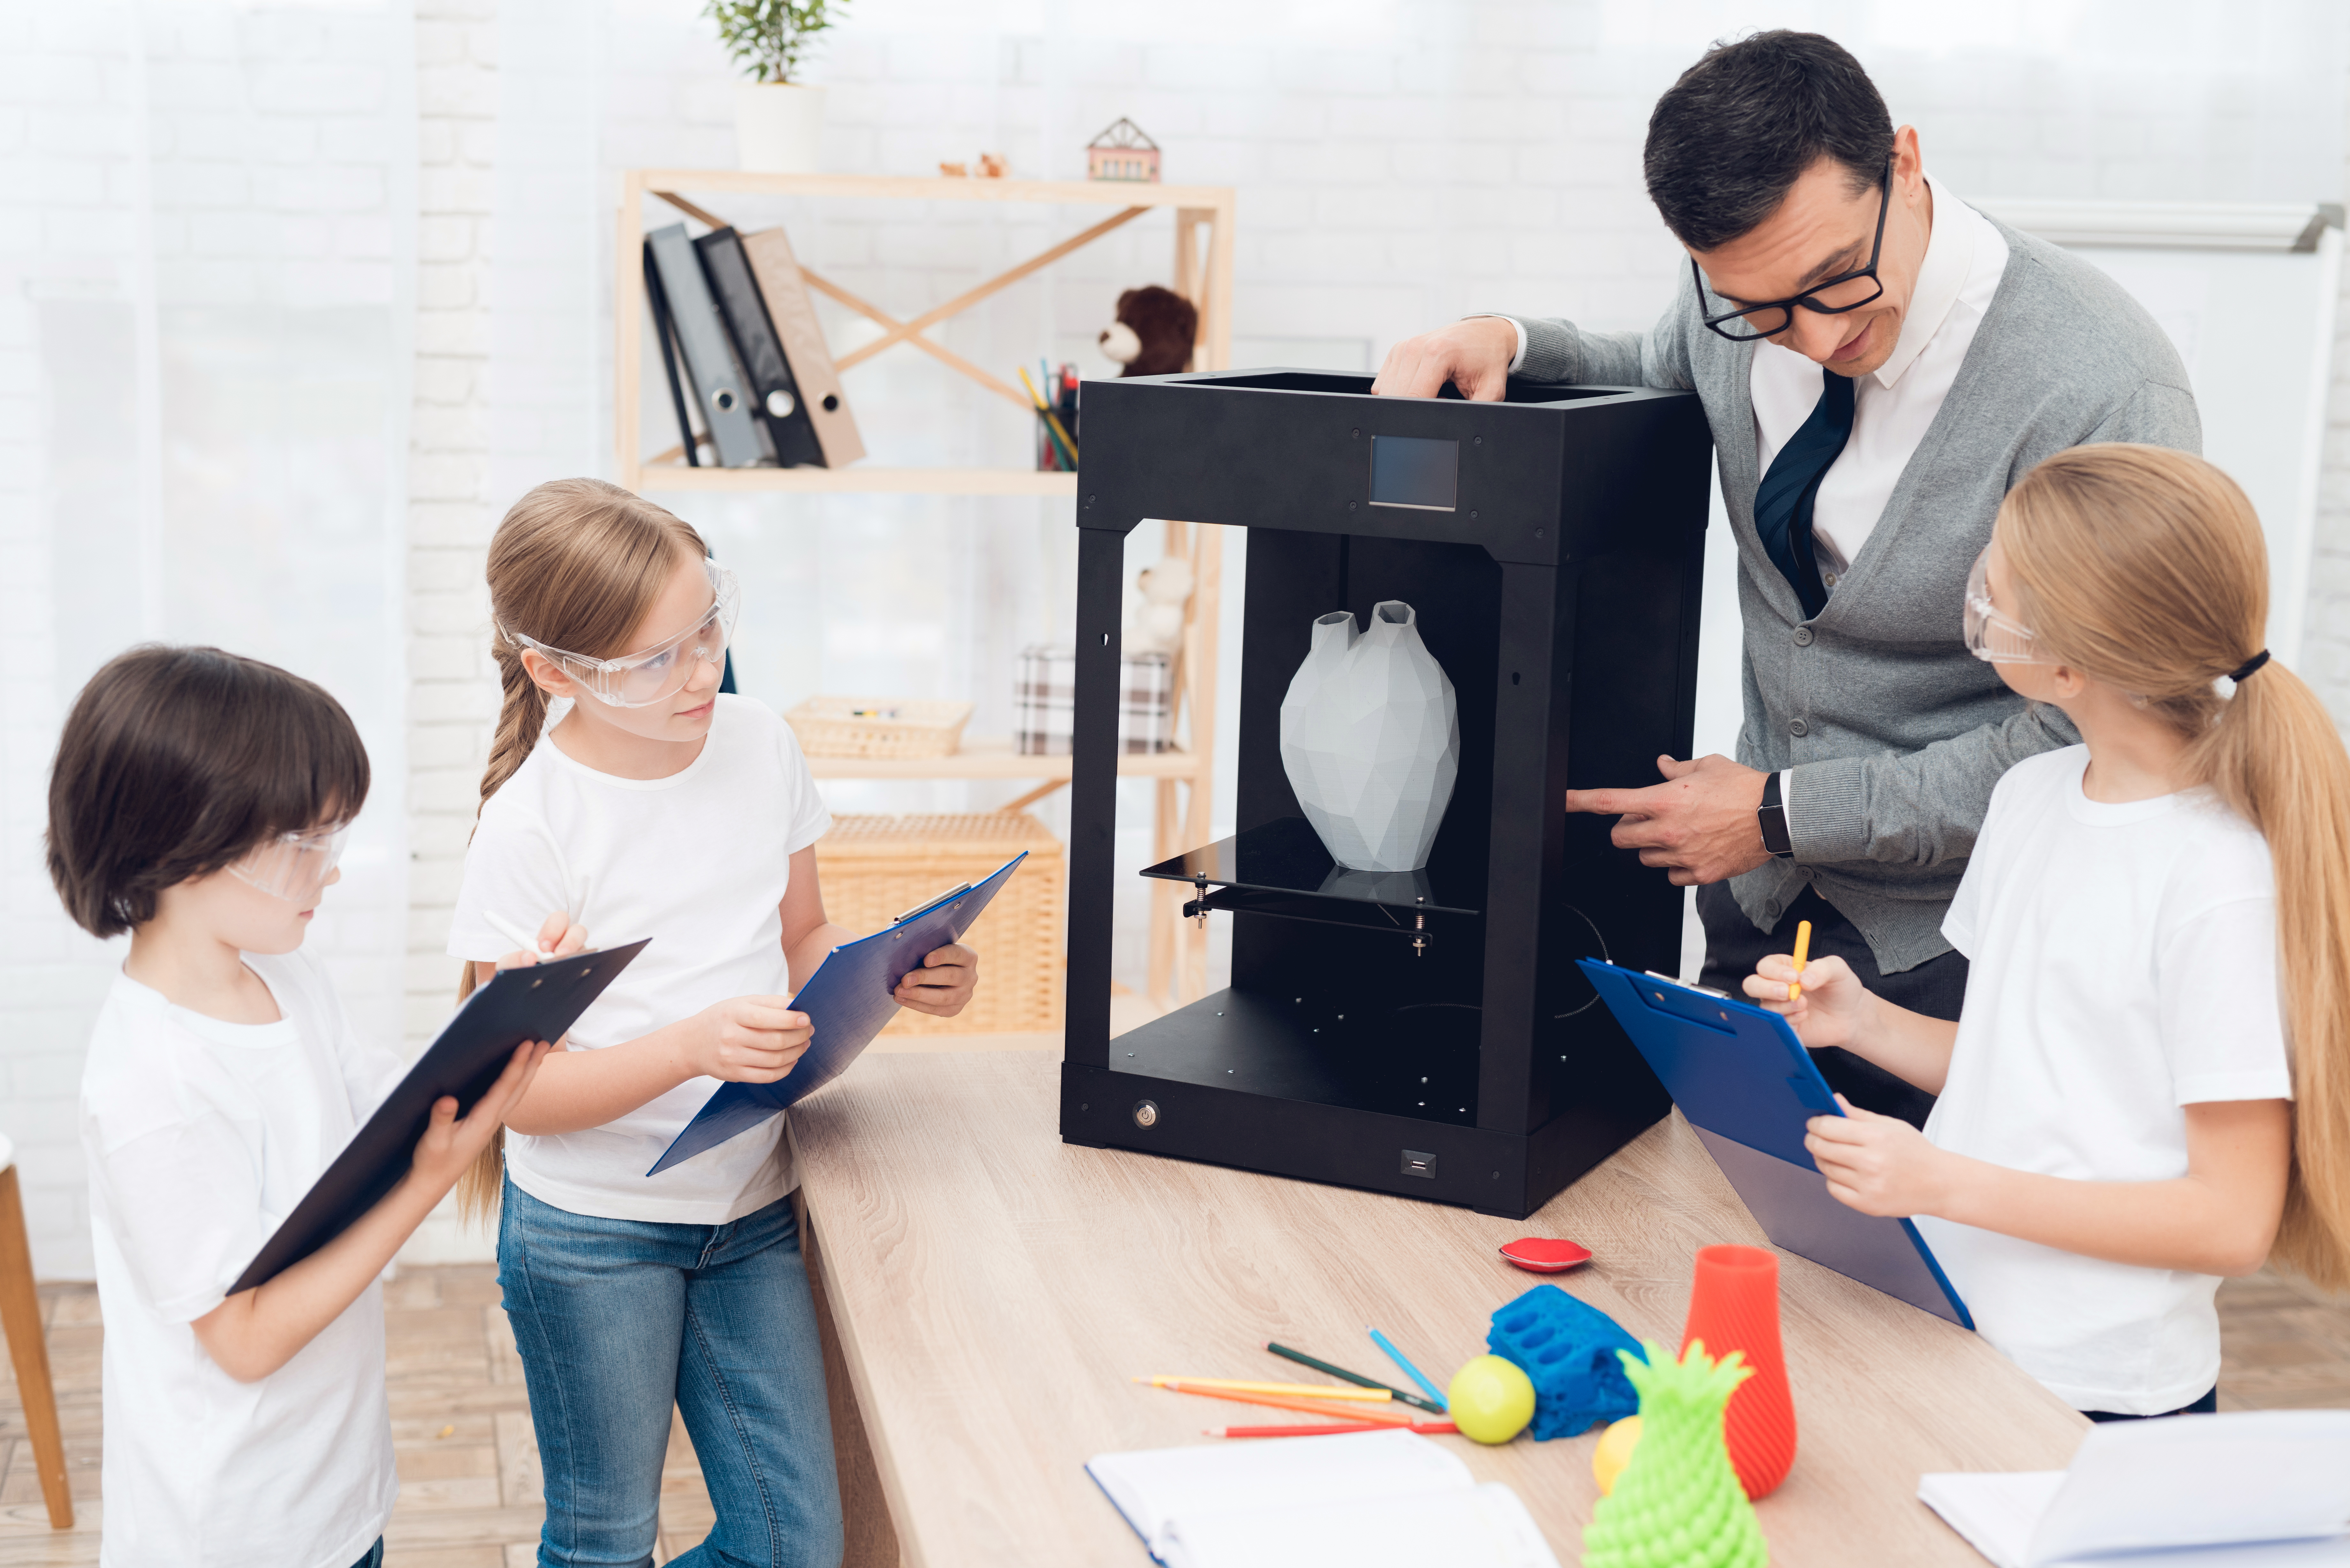 O incrível futuro das impressoras 3D